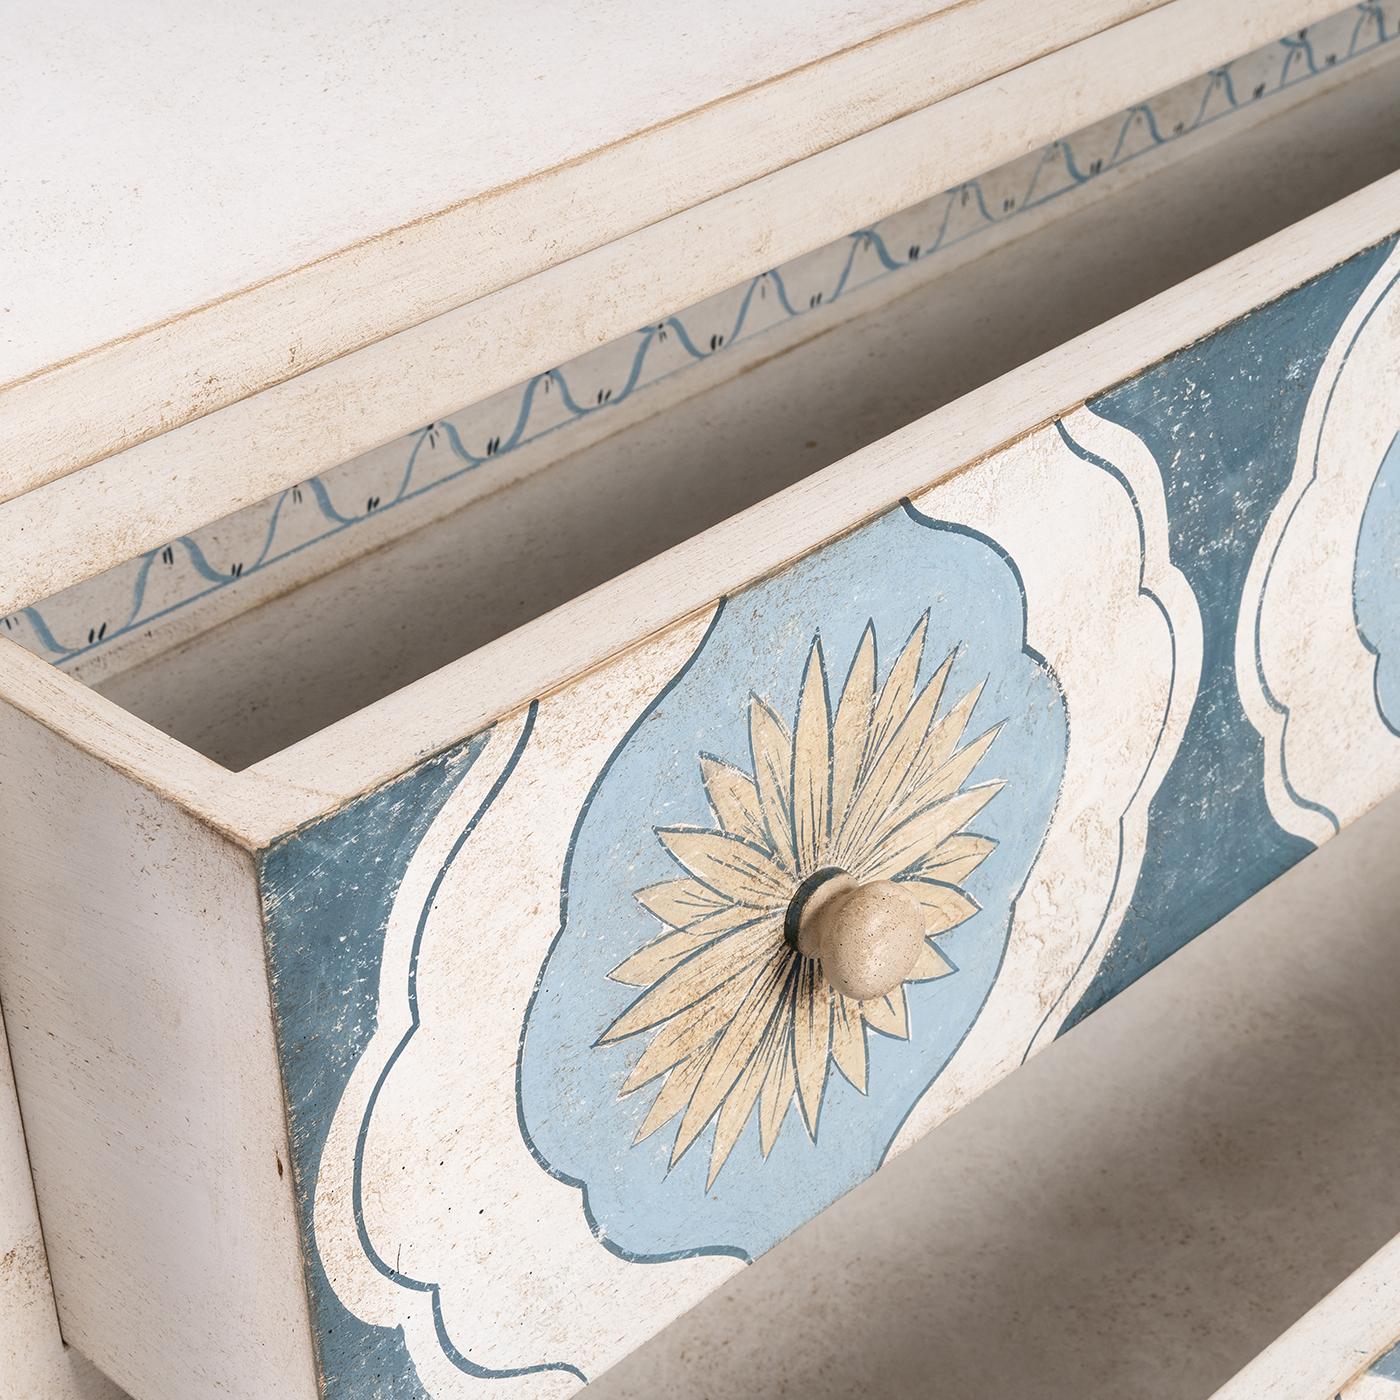 Voici le coffre Barberini avec un décor de tournesols dans des tons bleu mer profond et bleu Parma. La décoration en ruban à l'intérieur des tiroirs ajoute une touche délicieuse. Taille et design personnalisables. Pour plus d'informations, veuillez